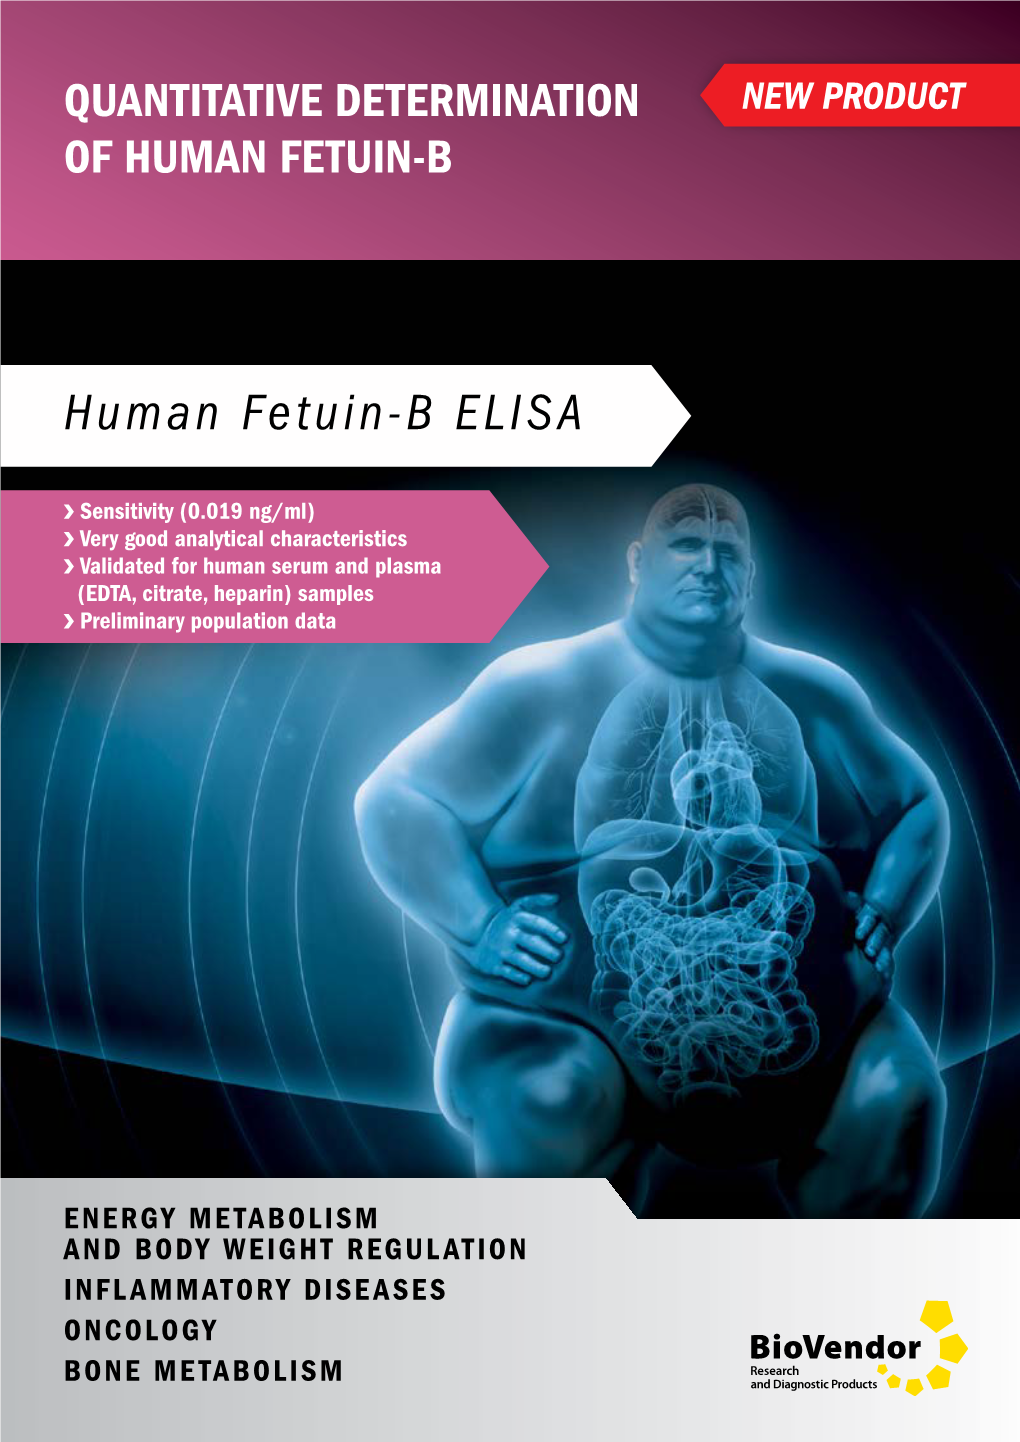 Human Fetuin-B ELISA